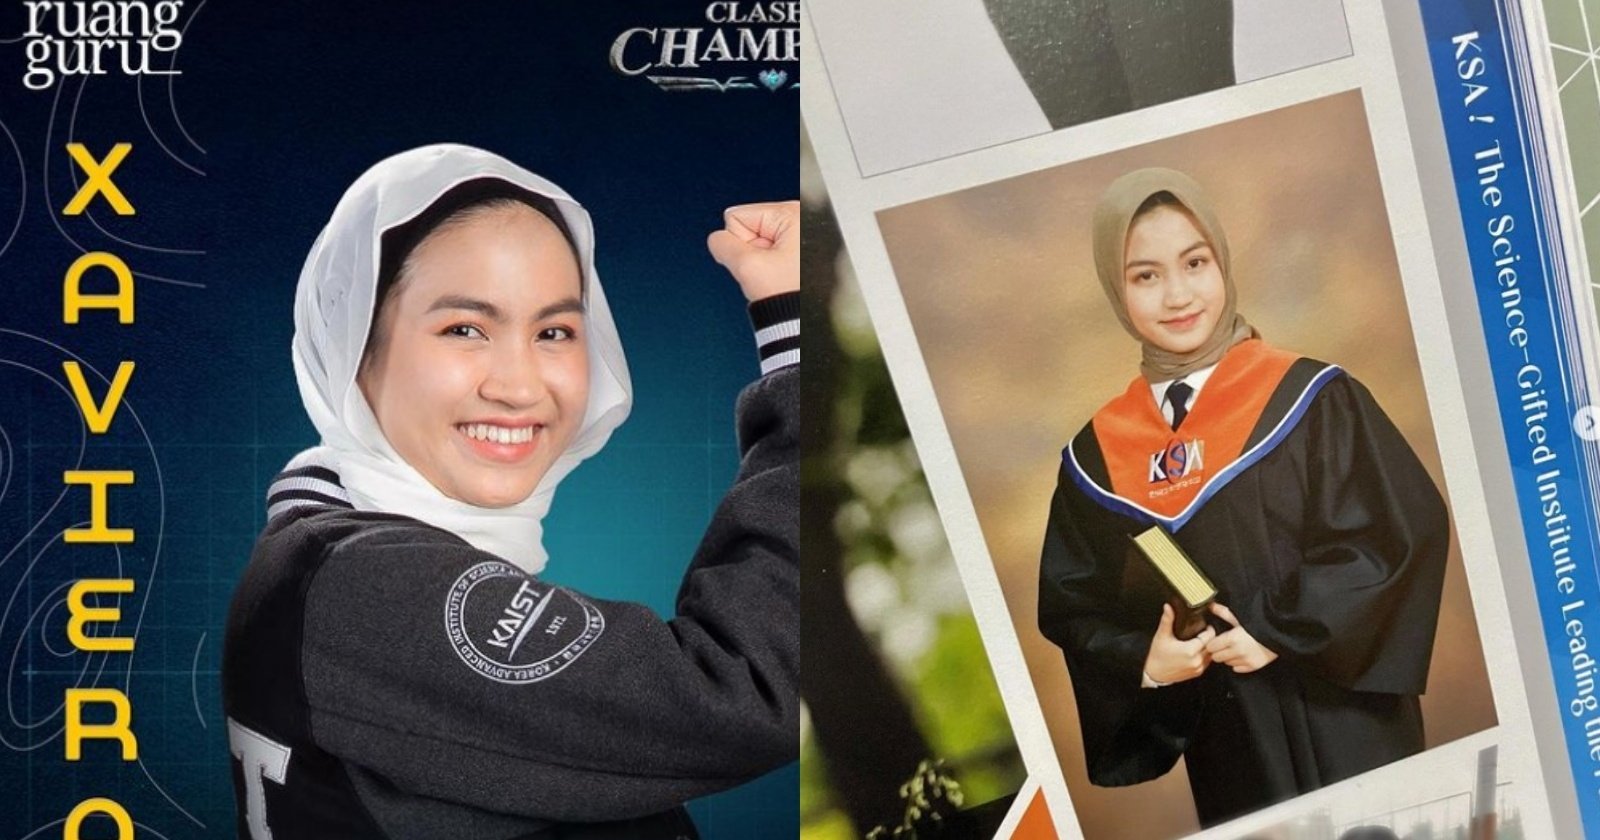 Profil Xaviera Putri, Peserta Clash of Champions yang Raih Beasiswa dari SMA hingga Kuliah di Korea